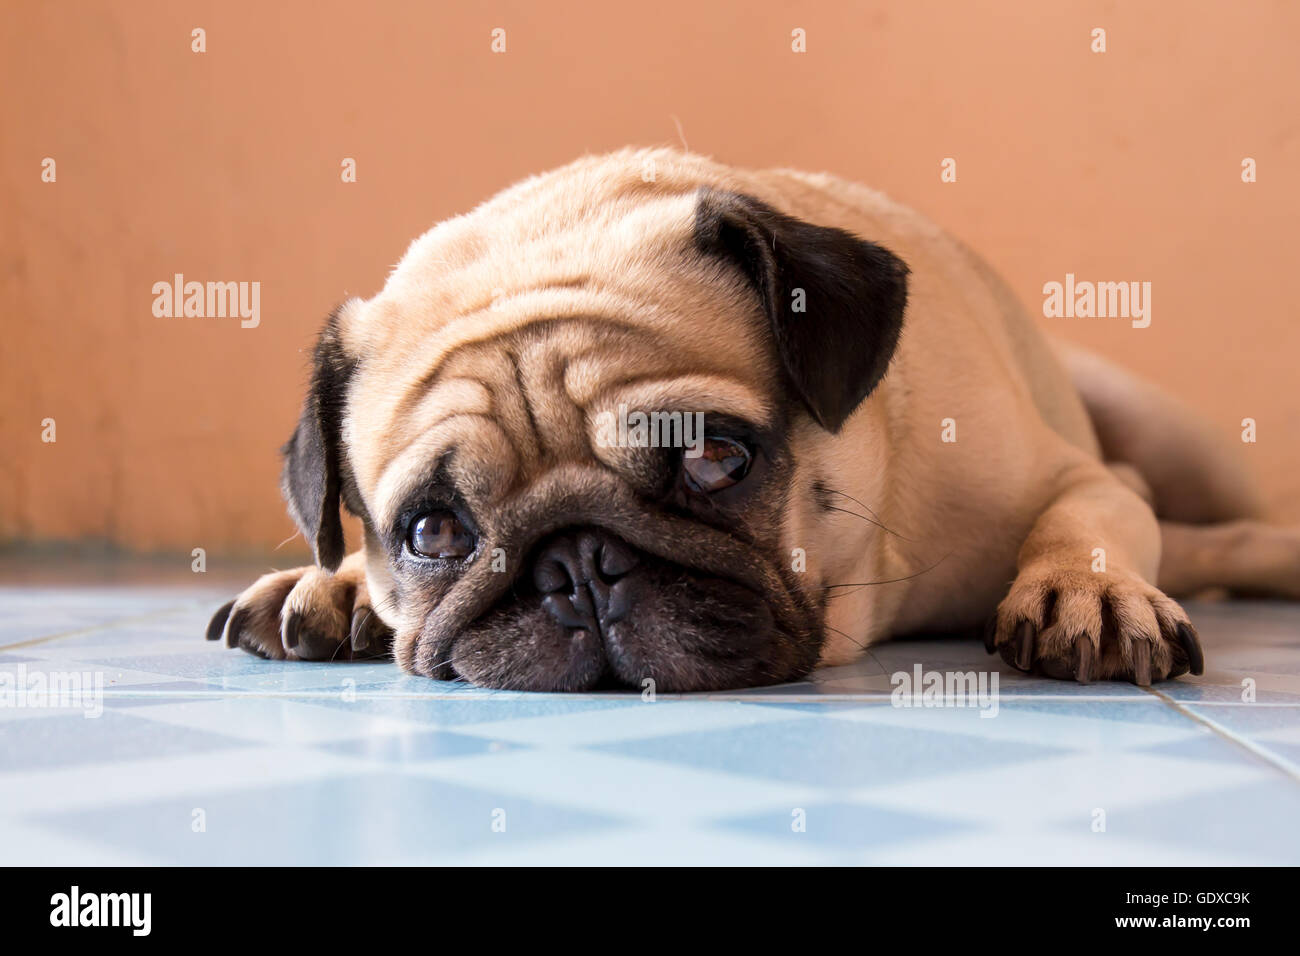 a cute Pug dog with a sad, fat face, sleep Stock Photo